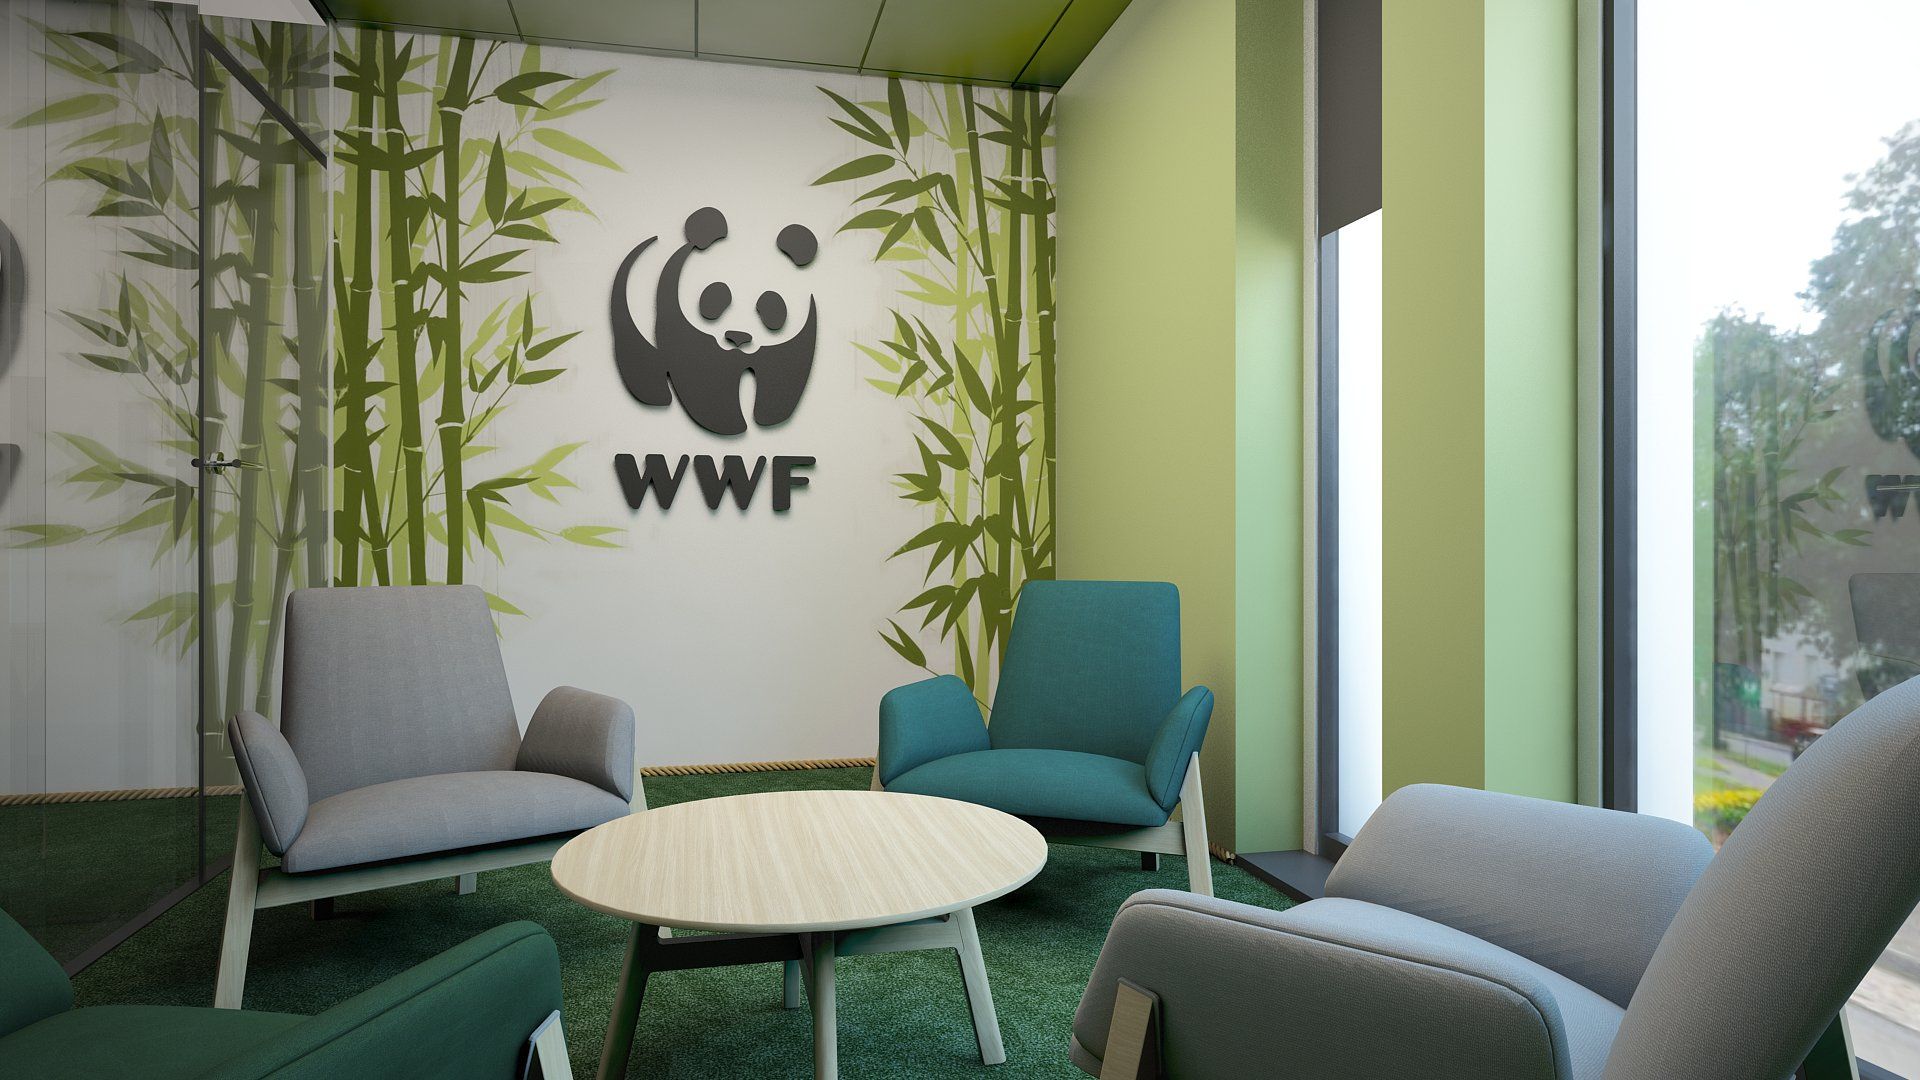 powierzchnie biurowe w Warszawie – projektowanie biur dla WWF